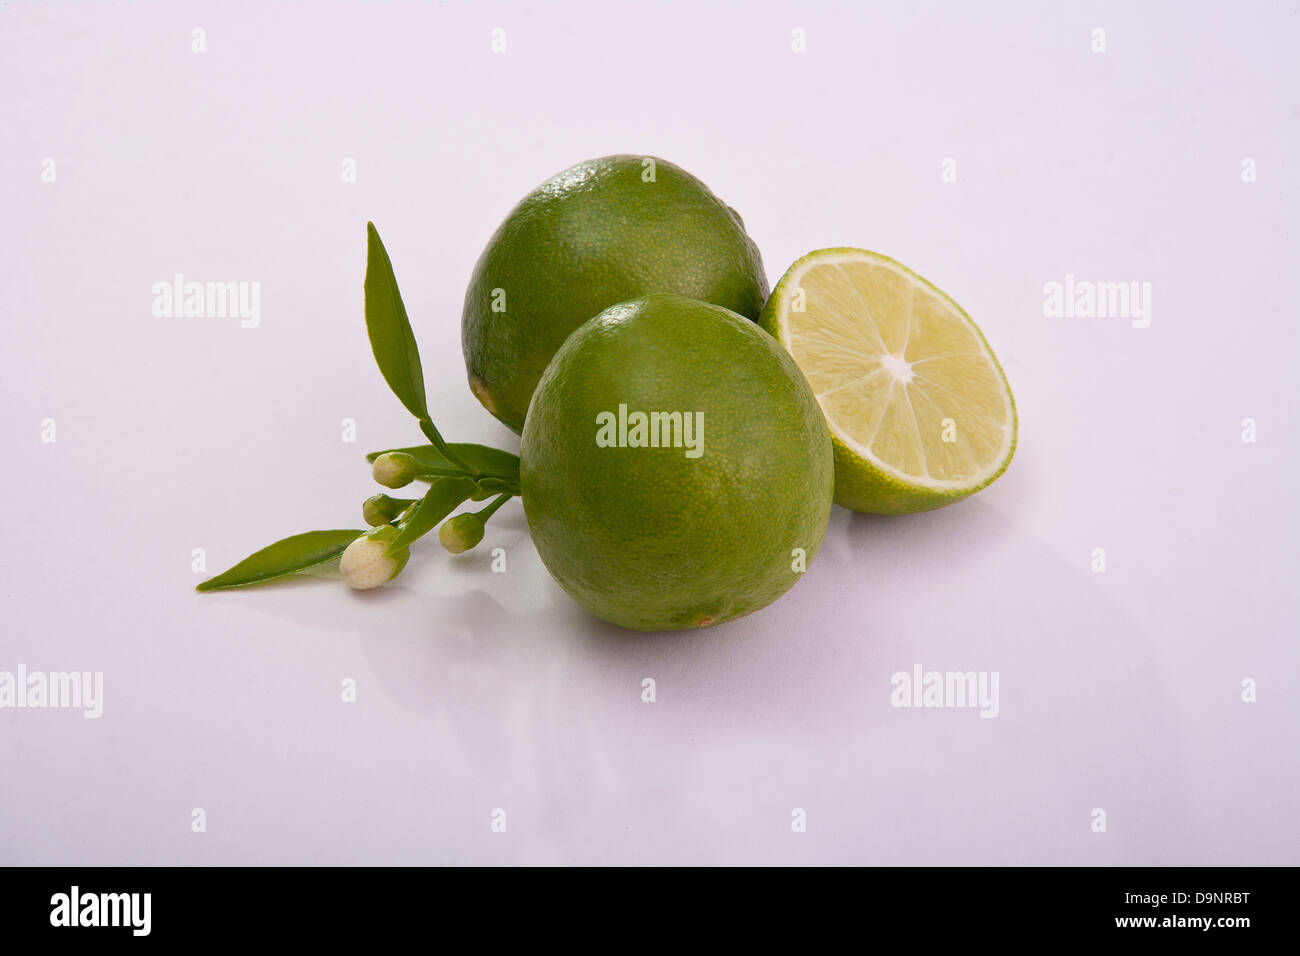 Grupo de limones agrios keylime fresca y saludable Foto de stock